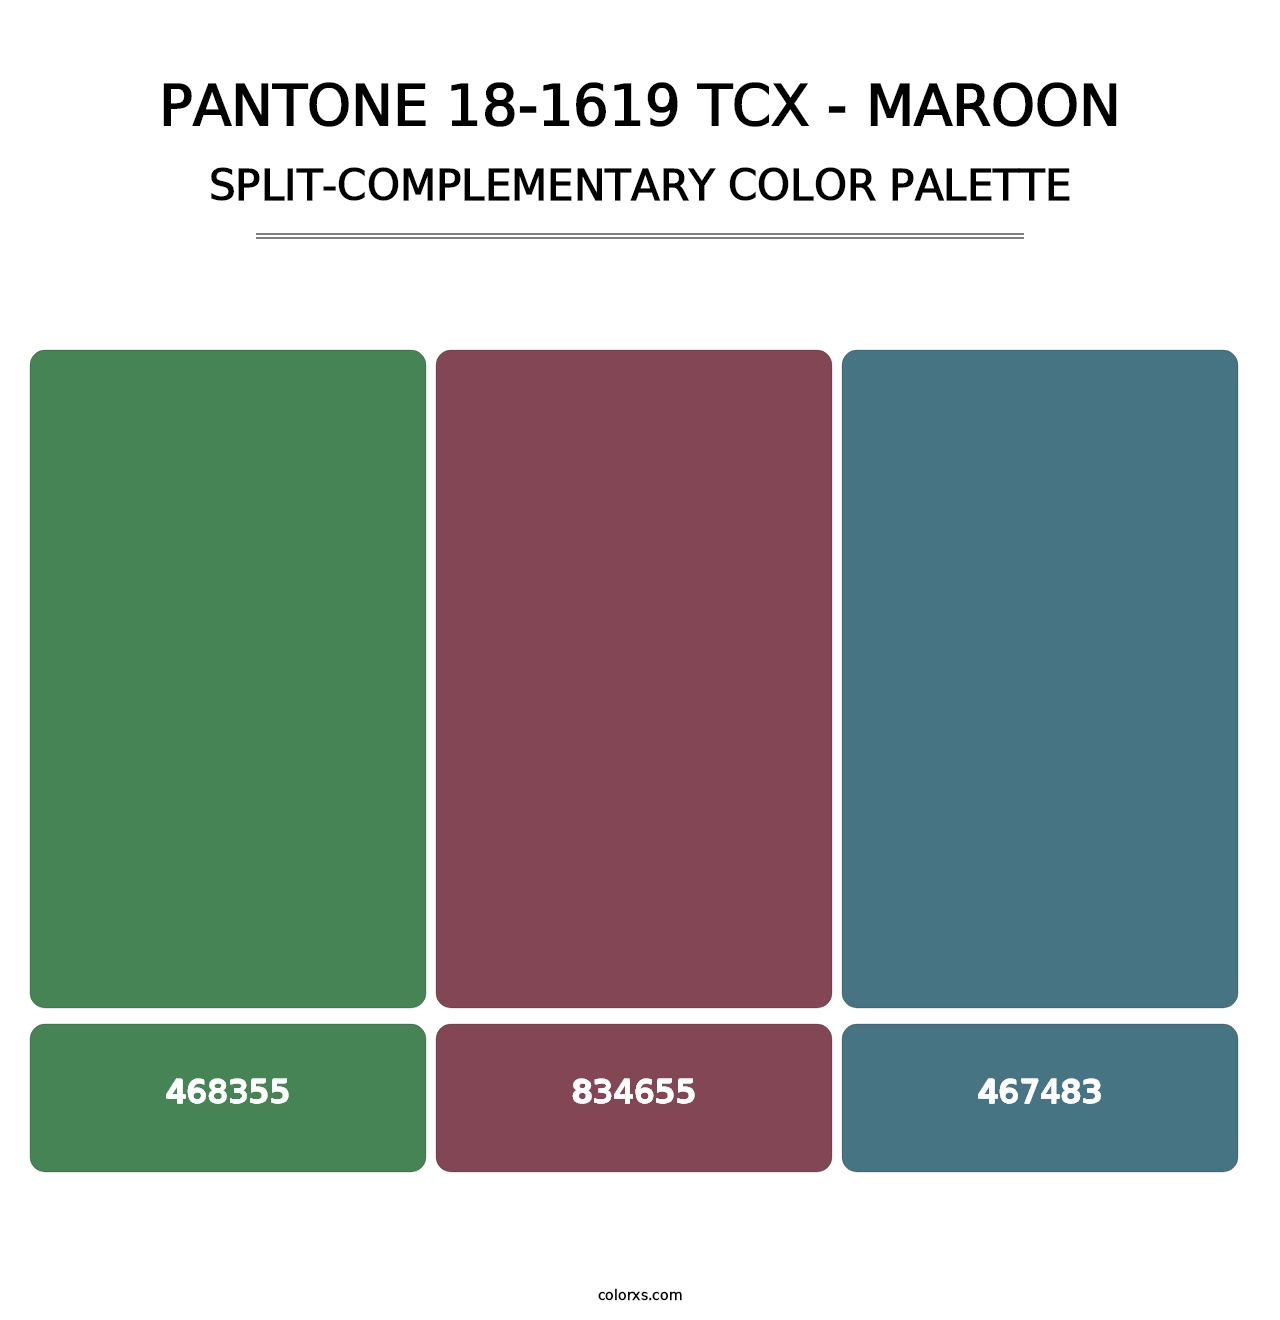 PANTONE 18-1619 TCX - Maroon - Split-Complementary Color Palette